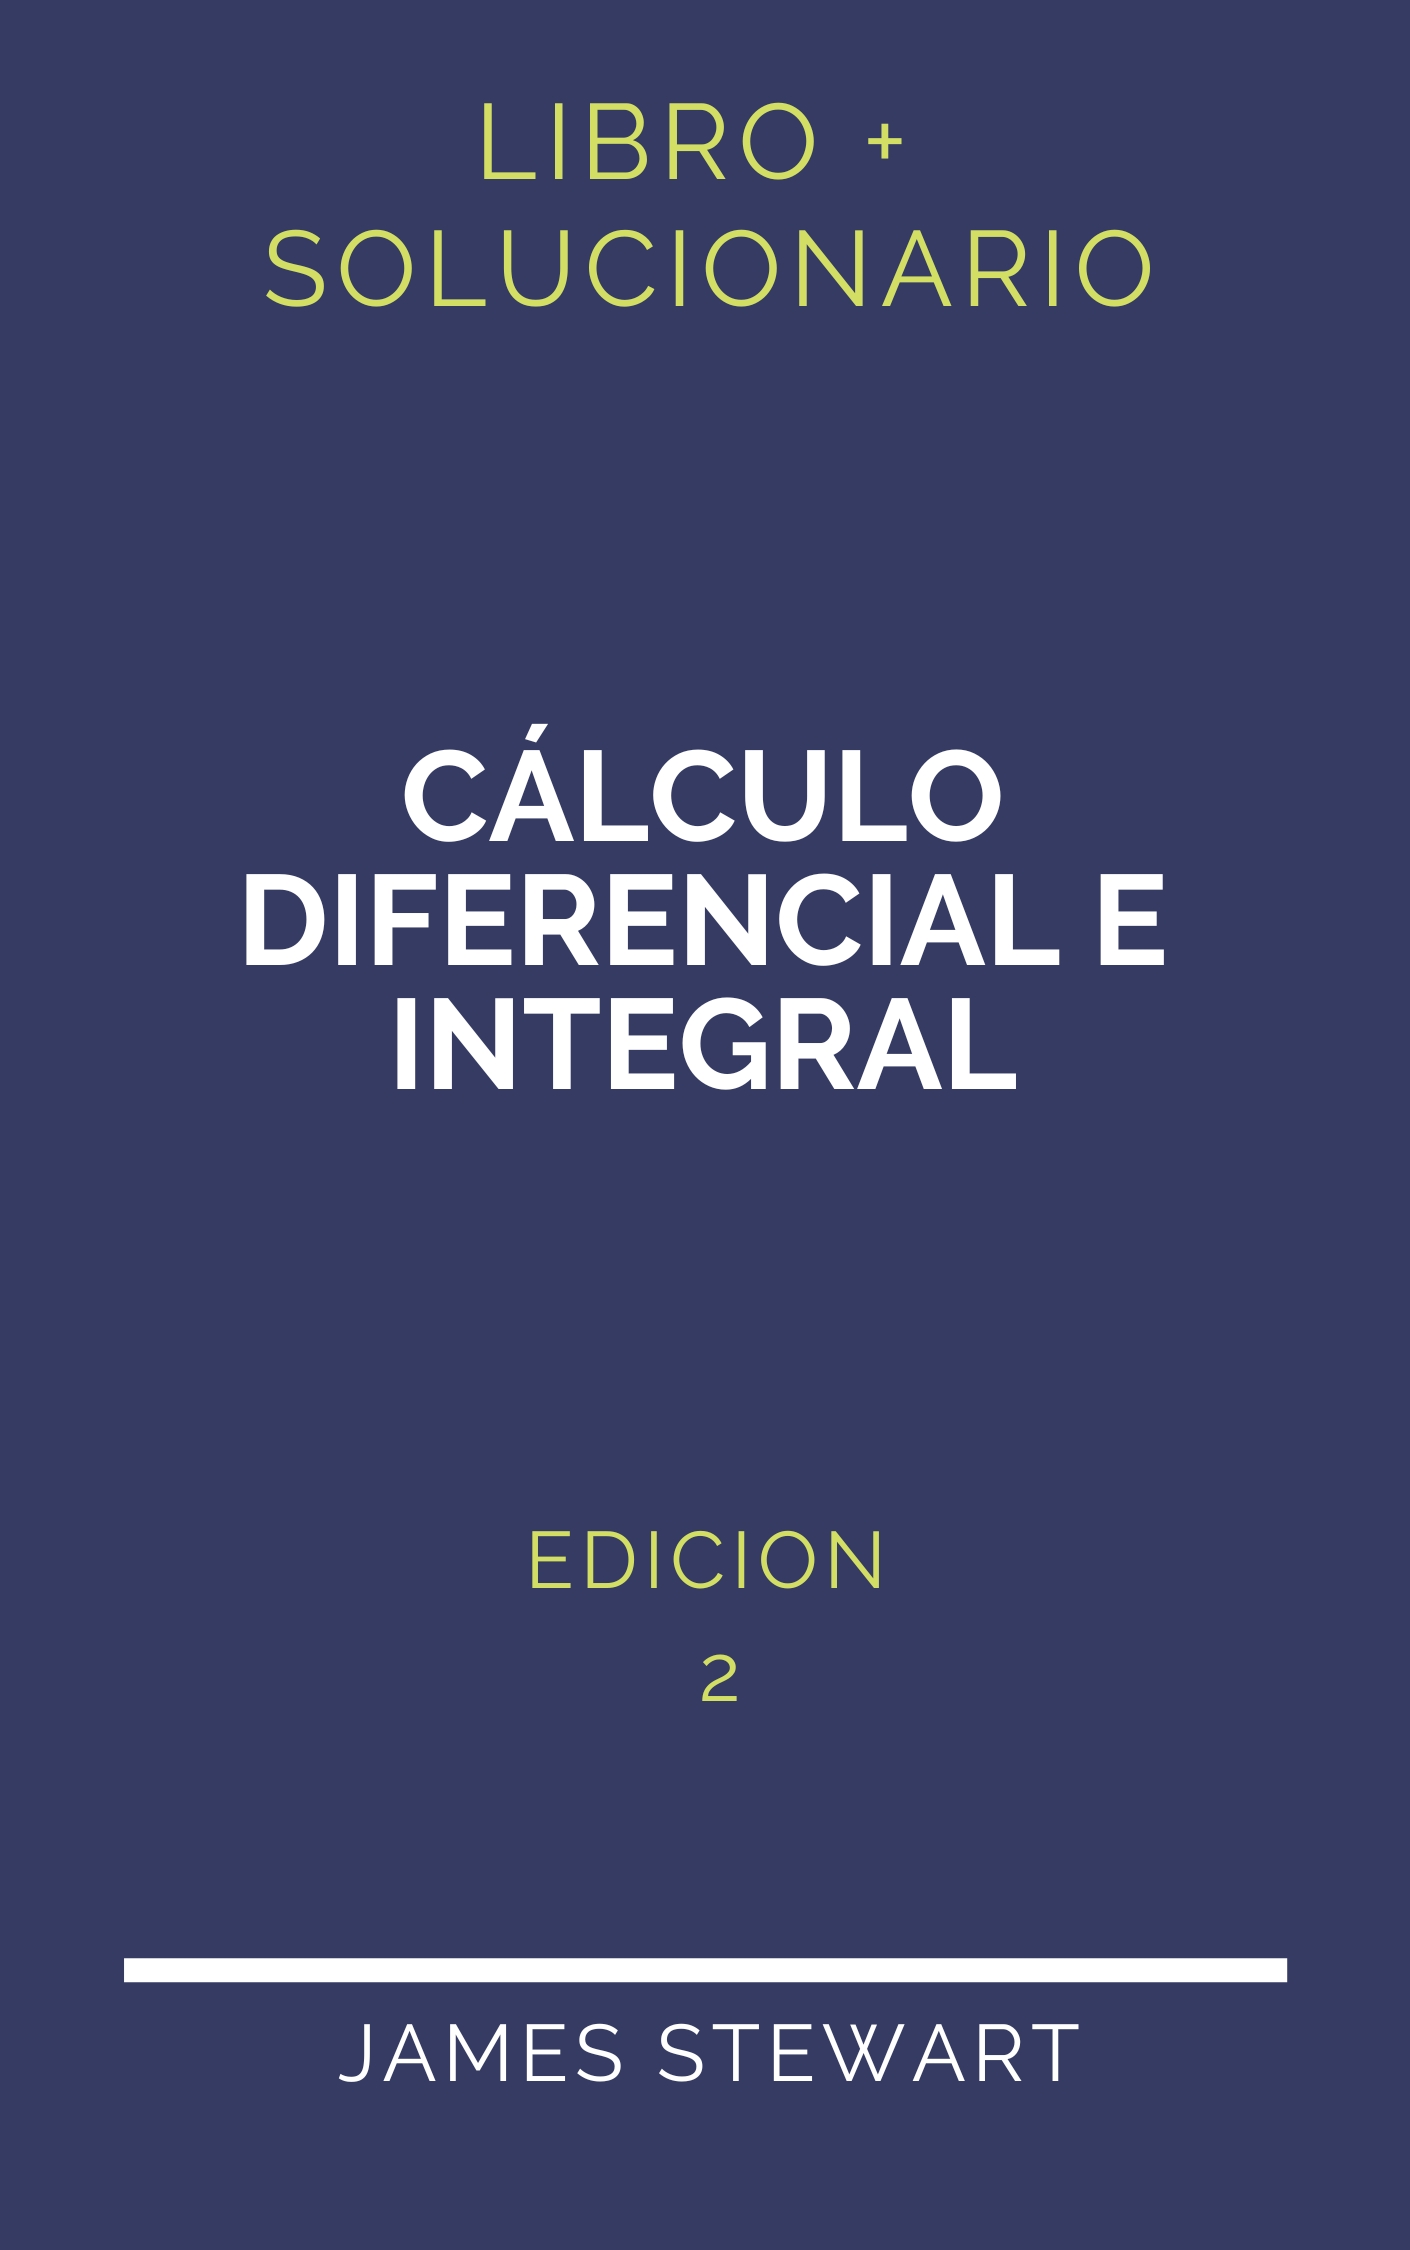 Solucionario Calculo Diferencial E Integral James Stewart 2da Edicion Pdf Libro 7912